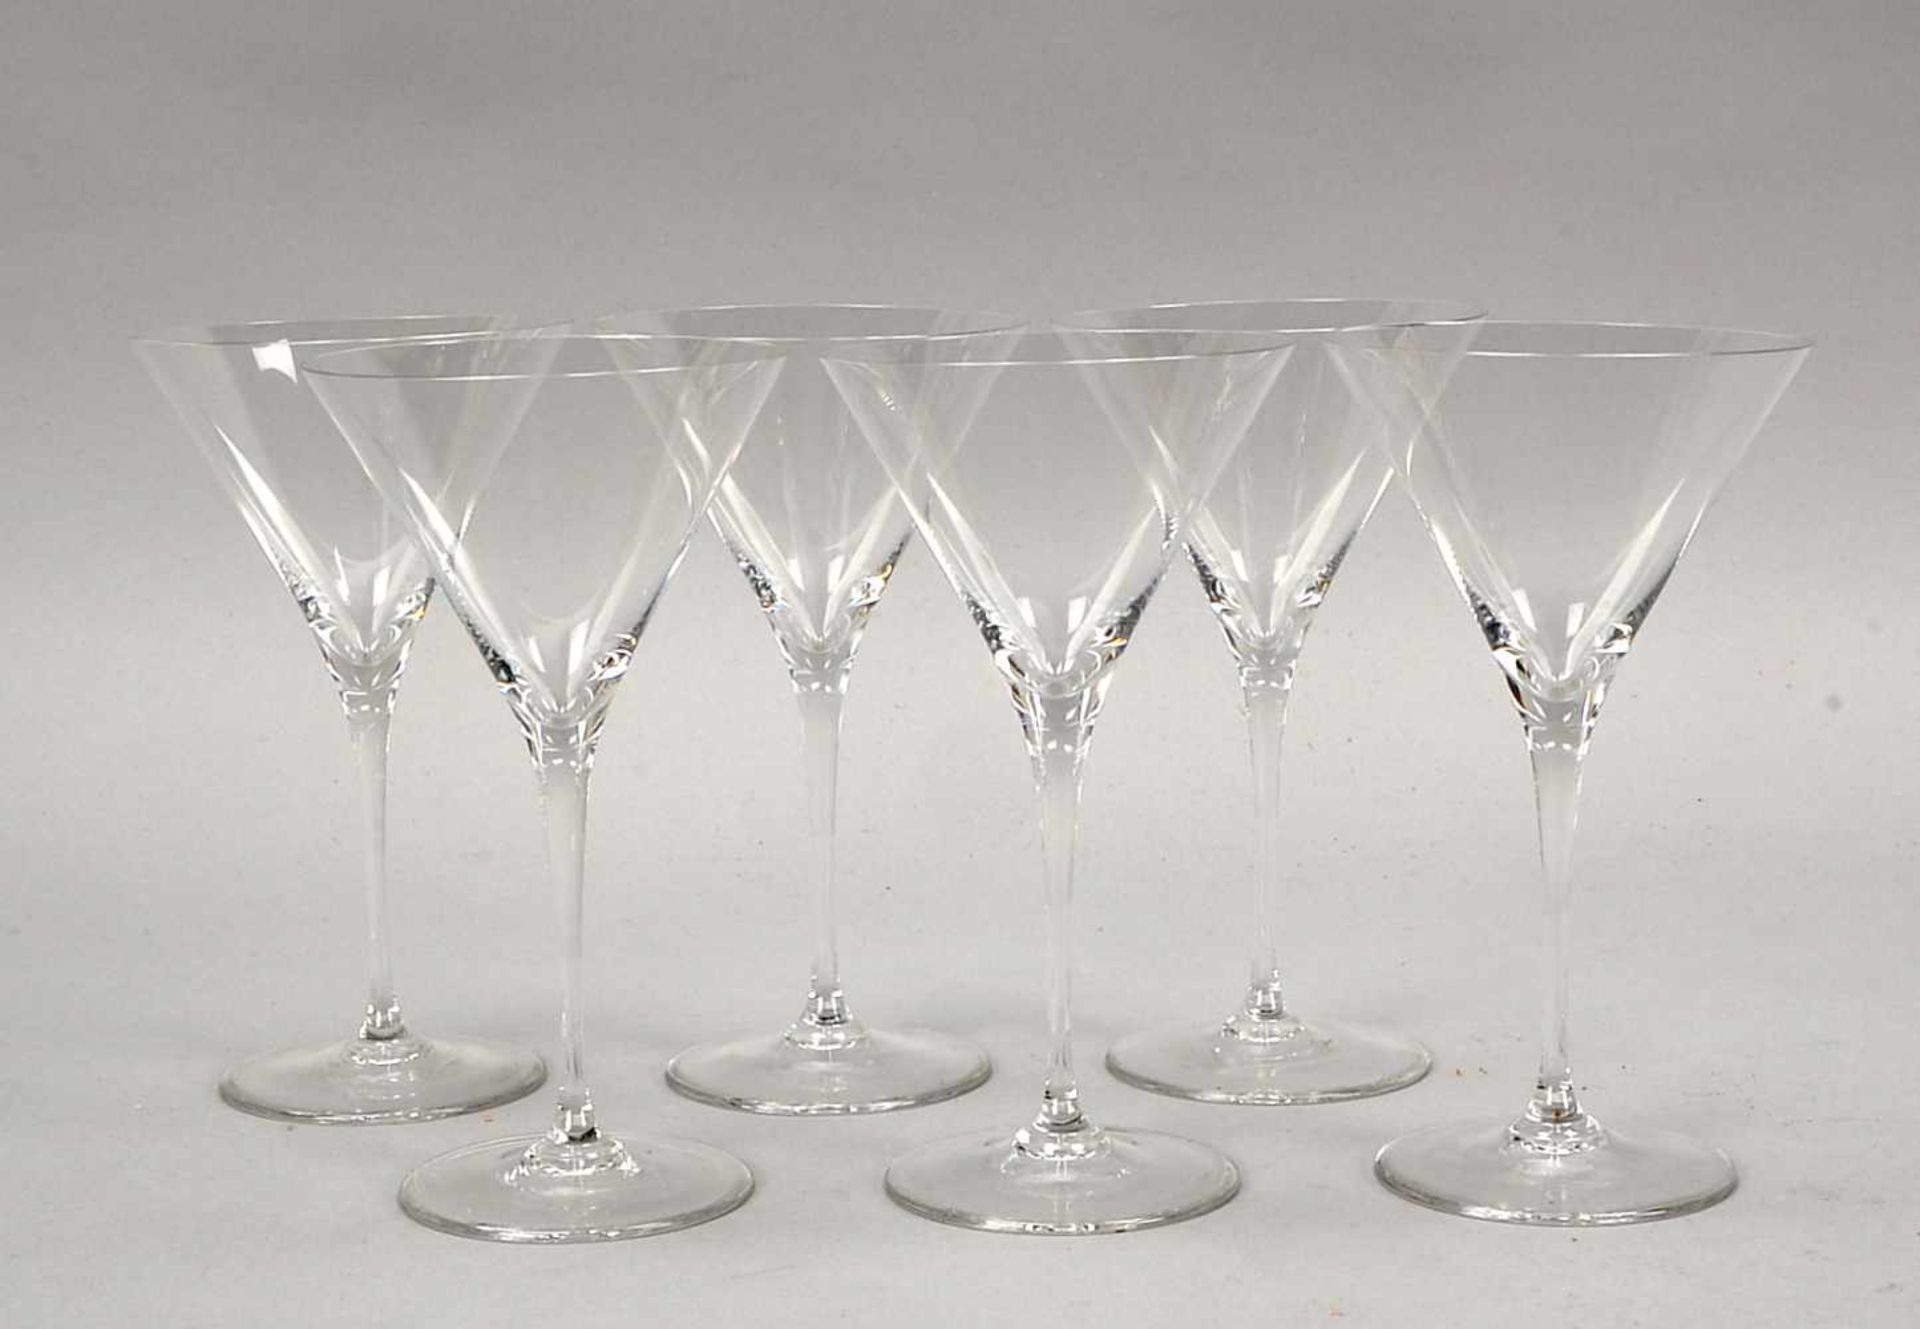 Riedel/Austria, Gläser-Satz (Design: 1982, Cocktailglas/Dessertglas), mundgeblasenes/handgefertigtes